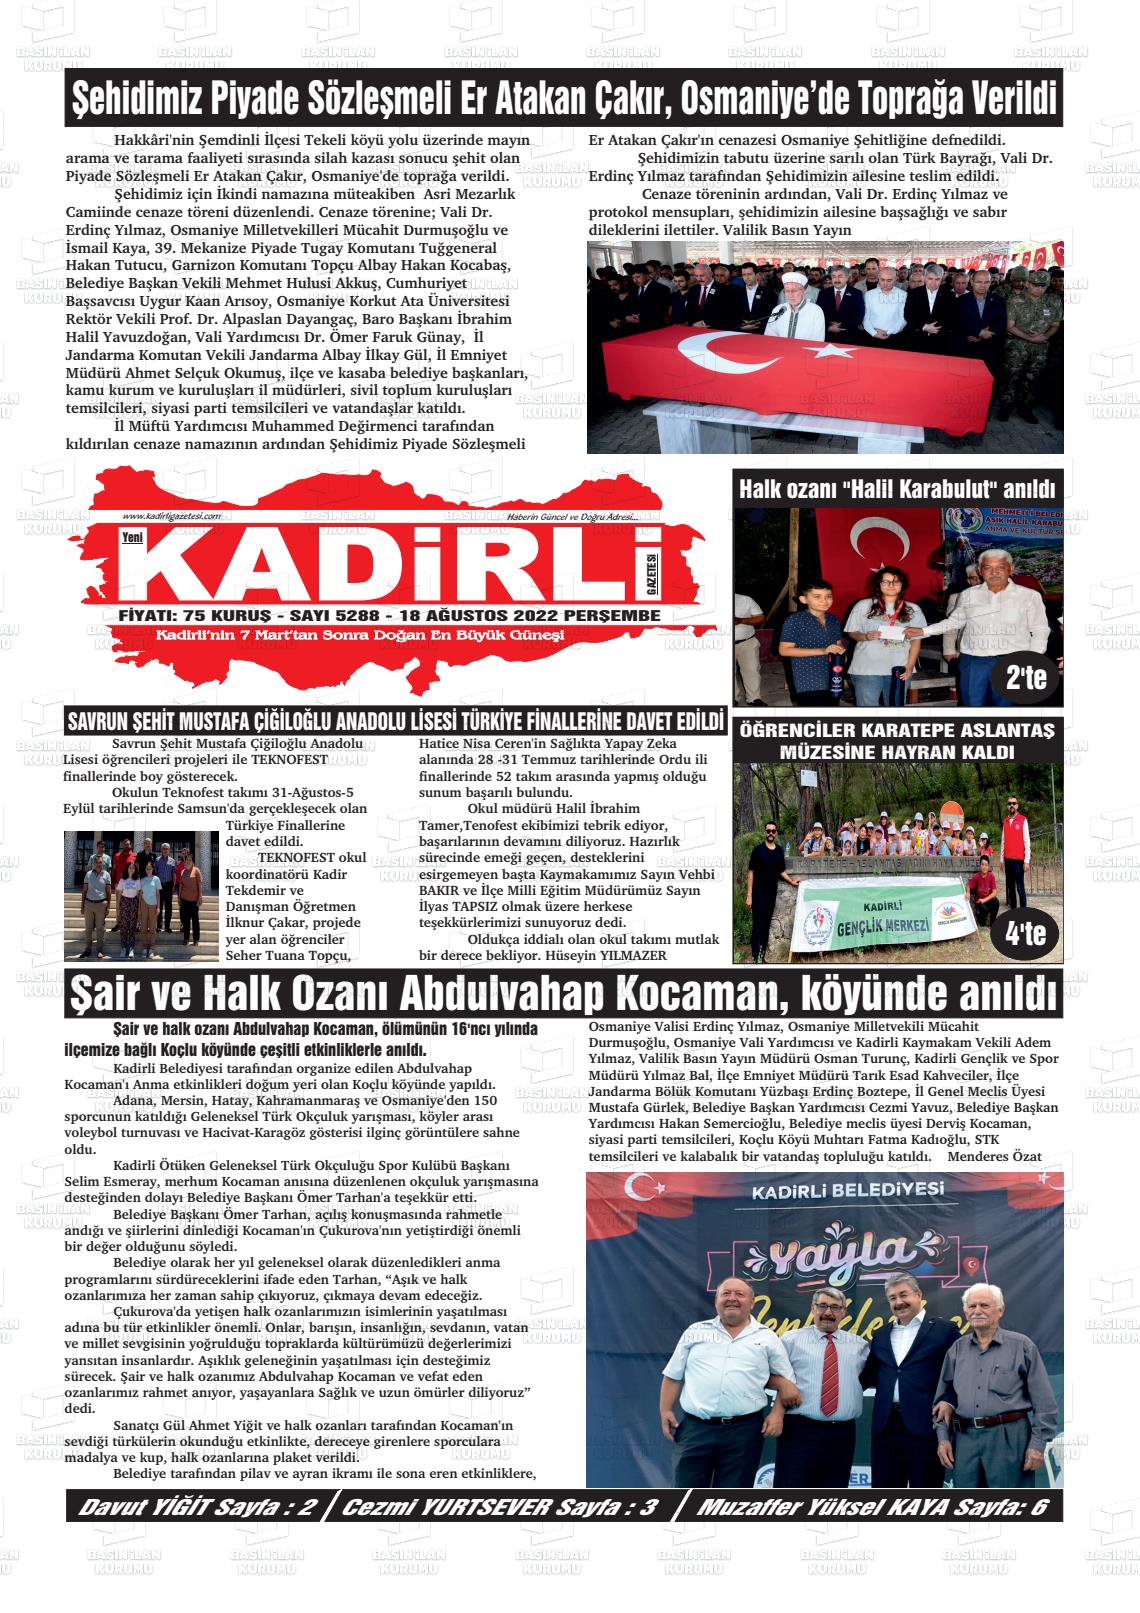 18 Ağustos 2022 Yeni Kadirli Gazete Manşeti